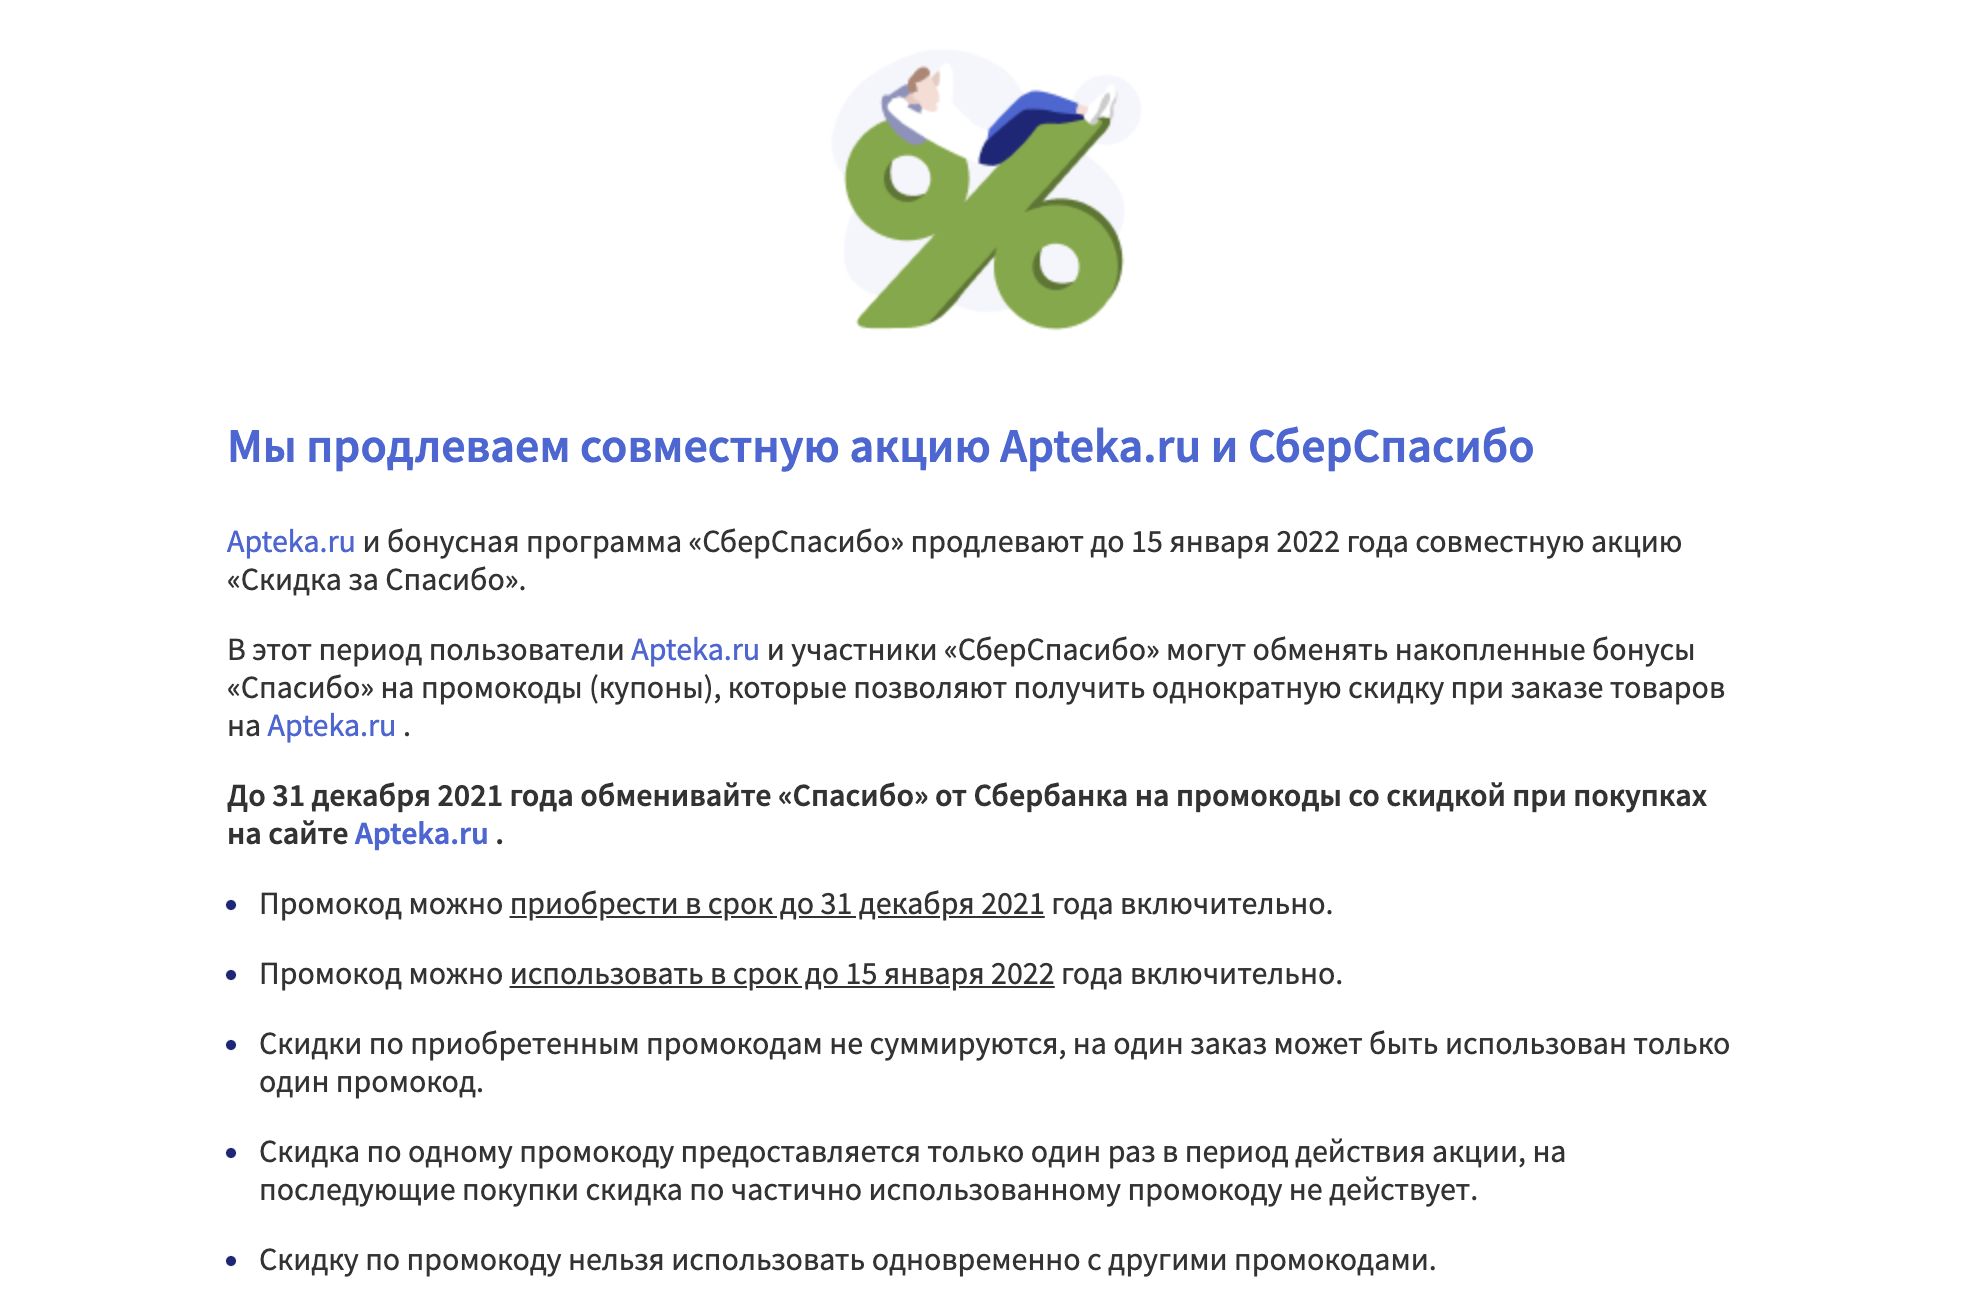 Как использовать бонусы СПАСИБО на сайте Apteka.ru